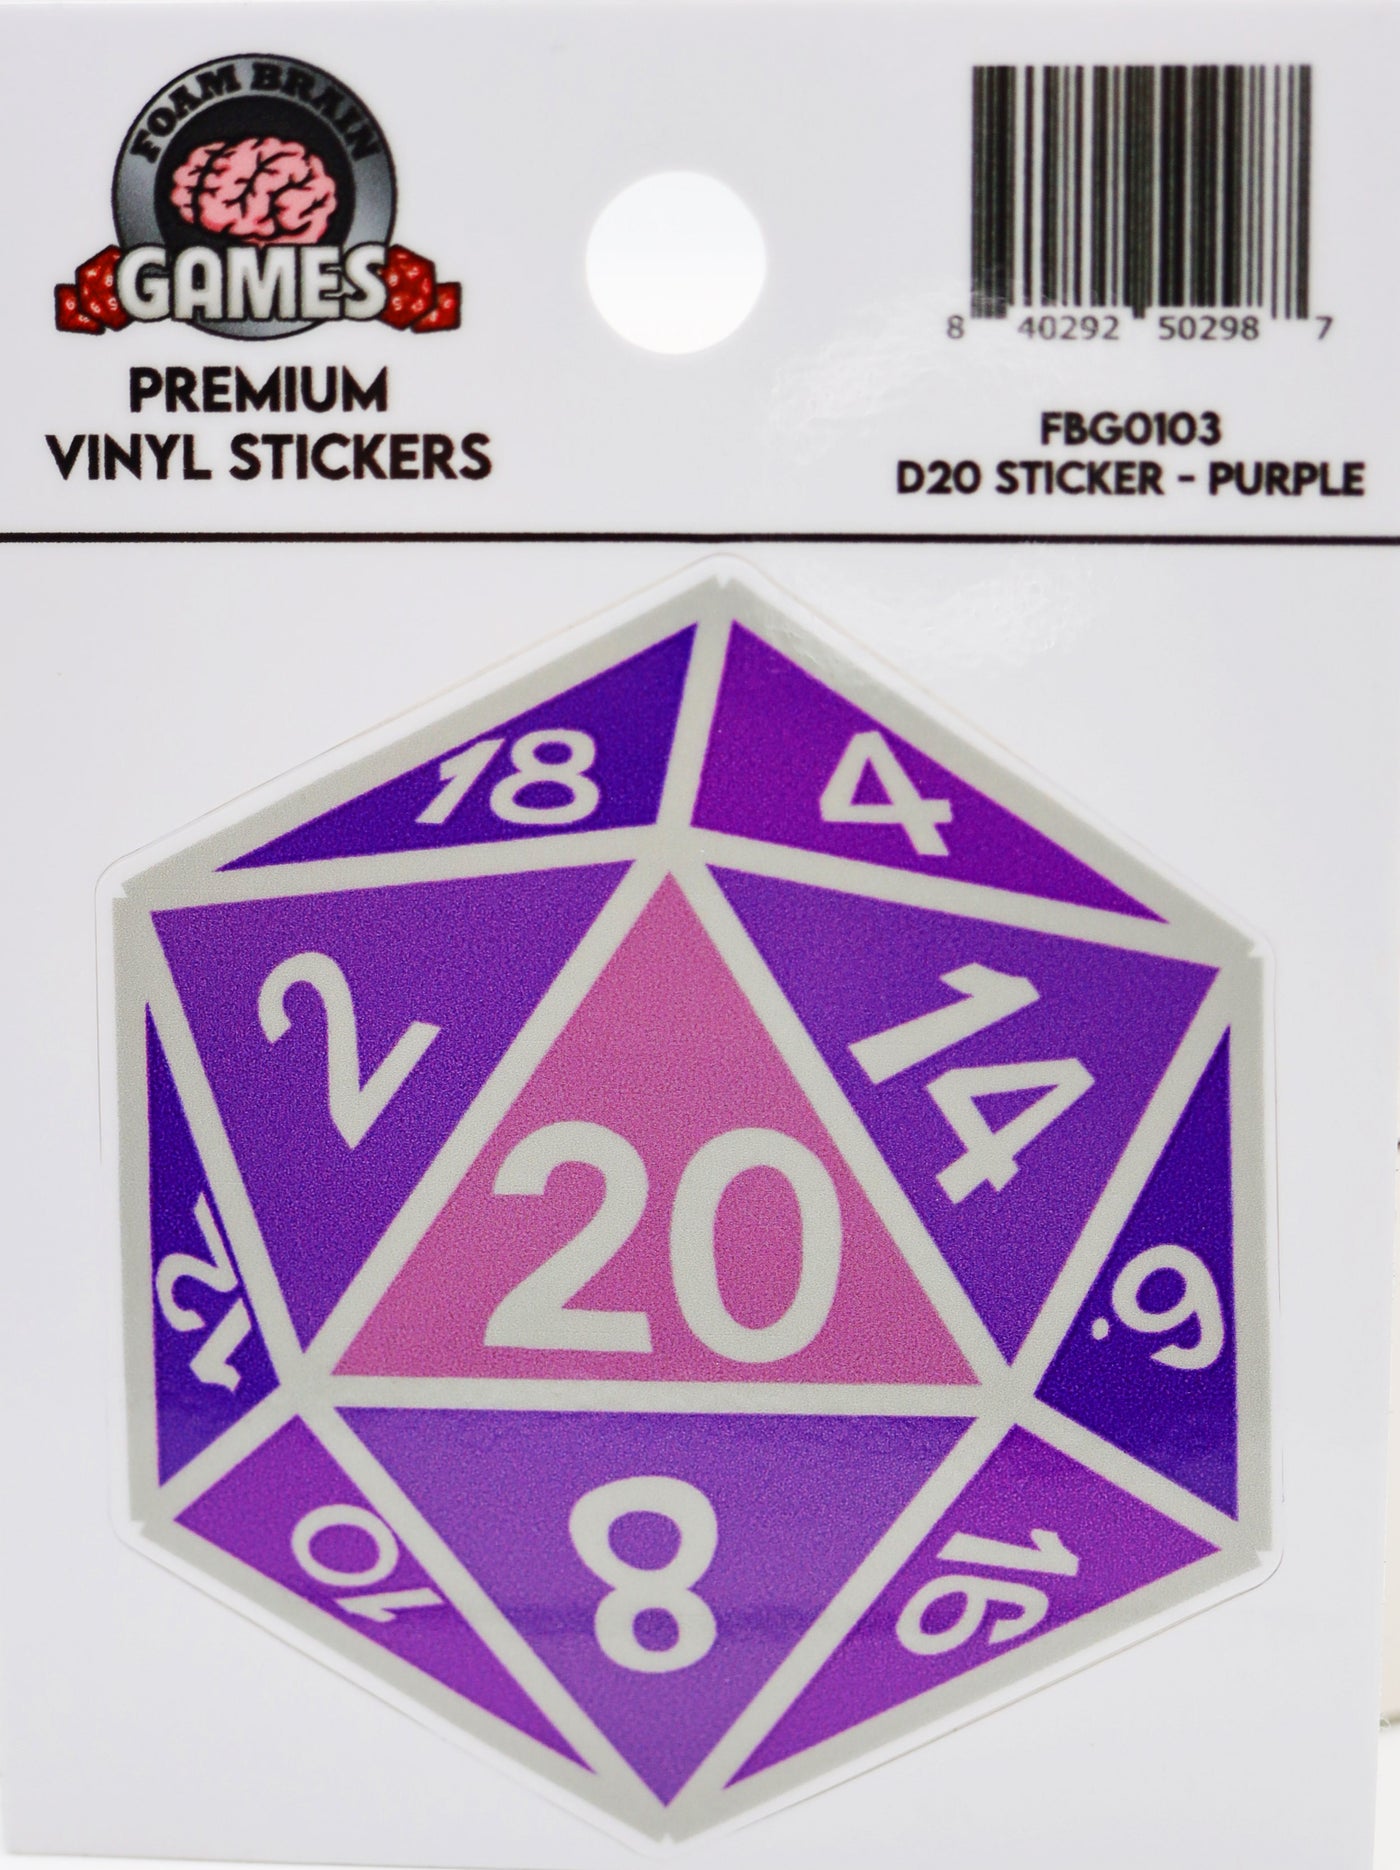 D20 Sticker - Purple Stickers Foam Brain Games